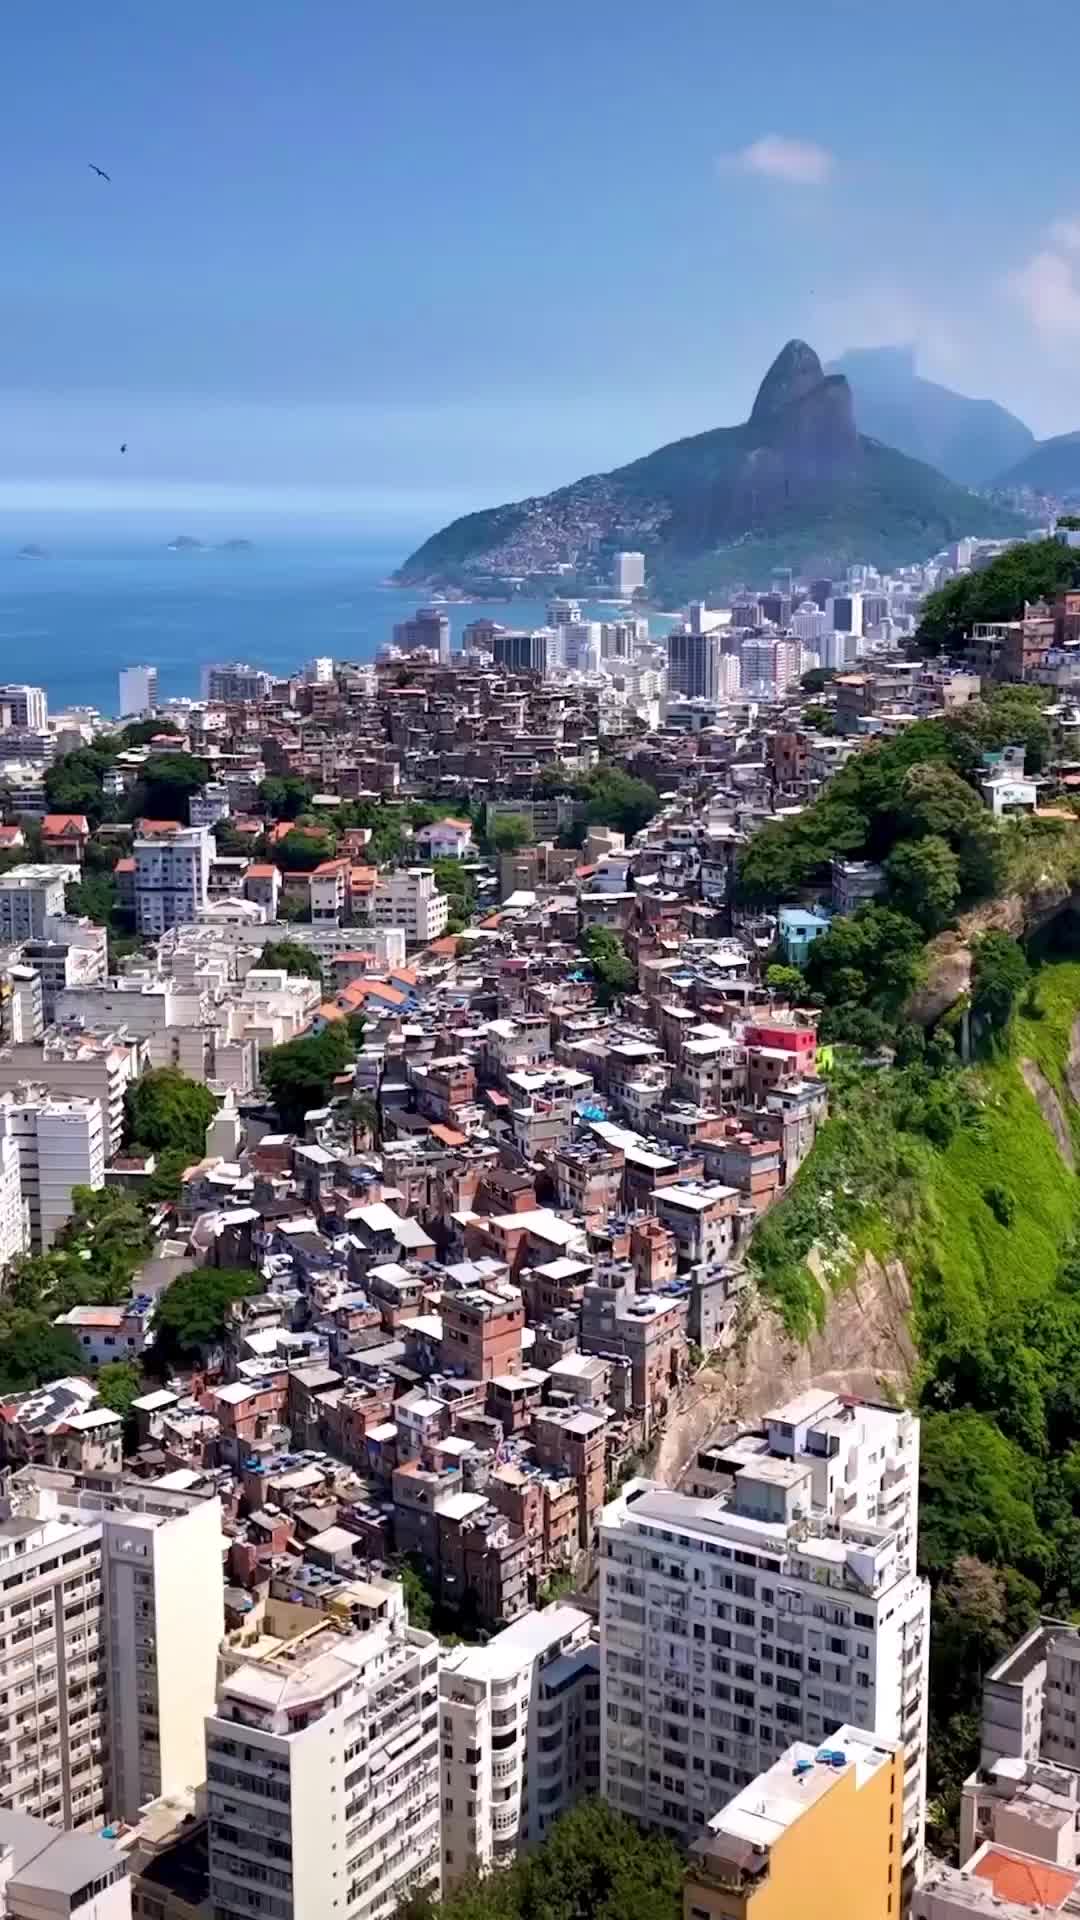 Rio de Janeiro Viewz #brasil 🏘️🦅⛰️🇧🇷
.
.
.
.
.
#copacabana#brazil#riodejaneiro#rio#riodejaneiroinstagram#brasilien#riodejaneirotrip#riodejaneirotop#ríodejaneiro#visitbrasil#visitbrazil#visitriodejaneiro#explorebrazil#riodejaneirogram#favela#southamerica#dronephotography#dronestagram#travelphotography#travelgram#instatravel#igtravel#travel#reisen#wanderlust#worldwalkerz